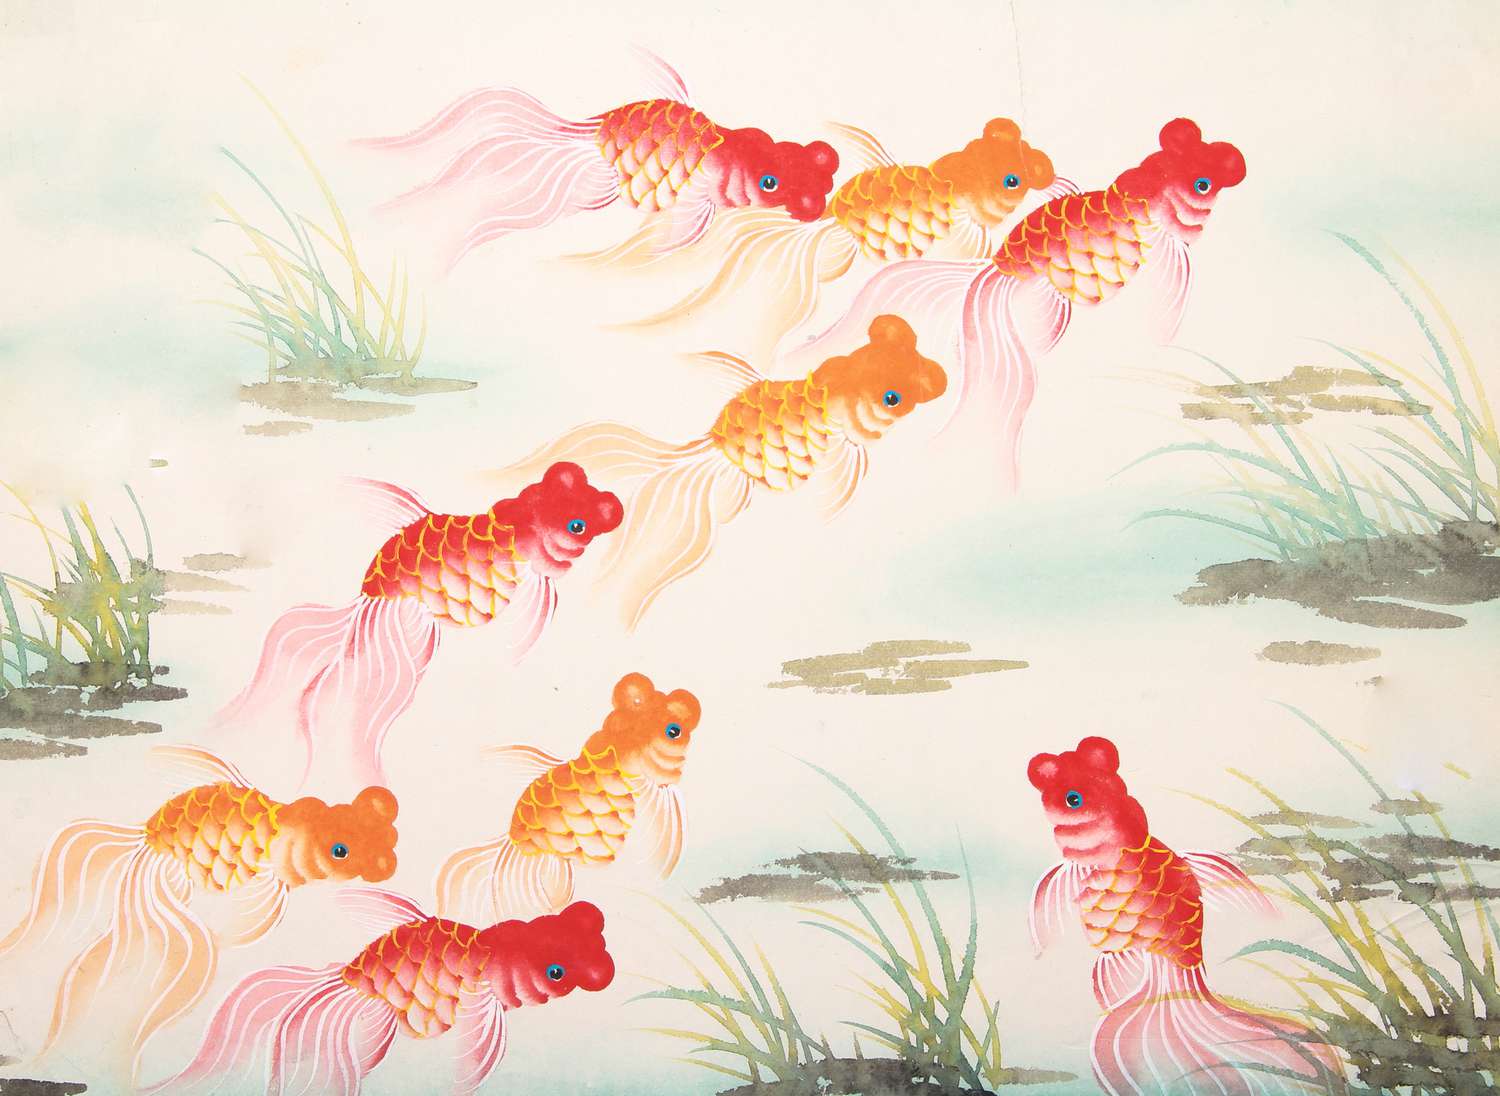 Pintura tradicional chinesa de peixe dourado